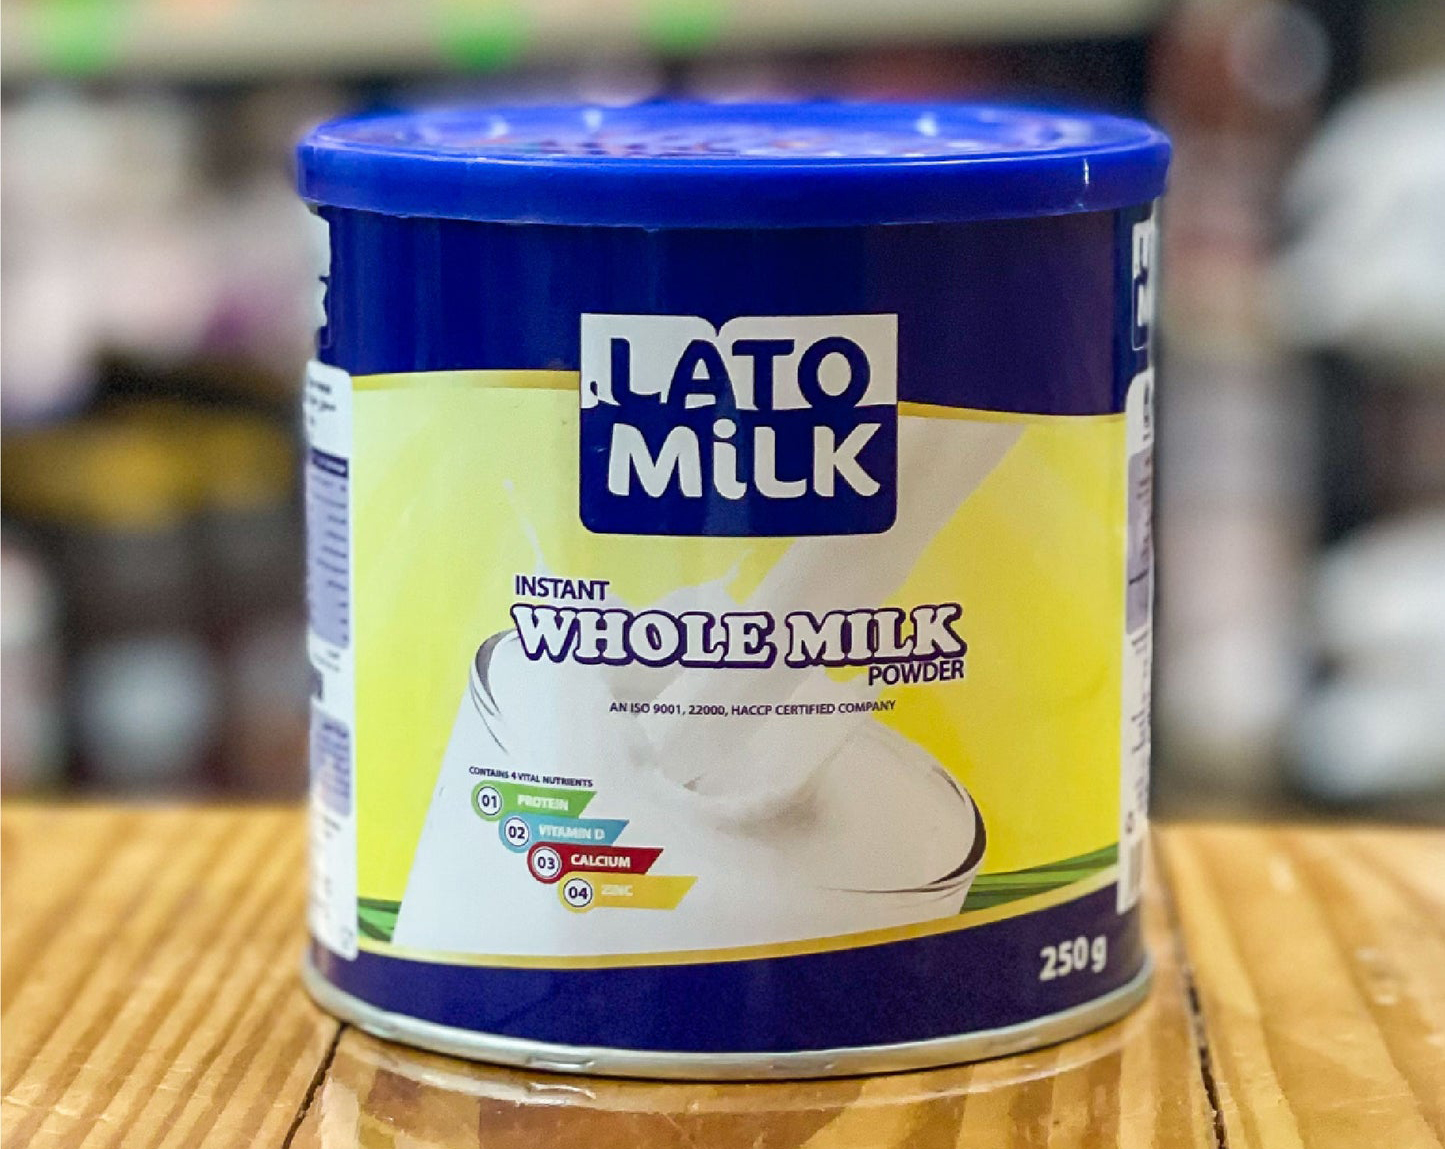 Lato-milk Instant Whole Milk Powder